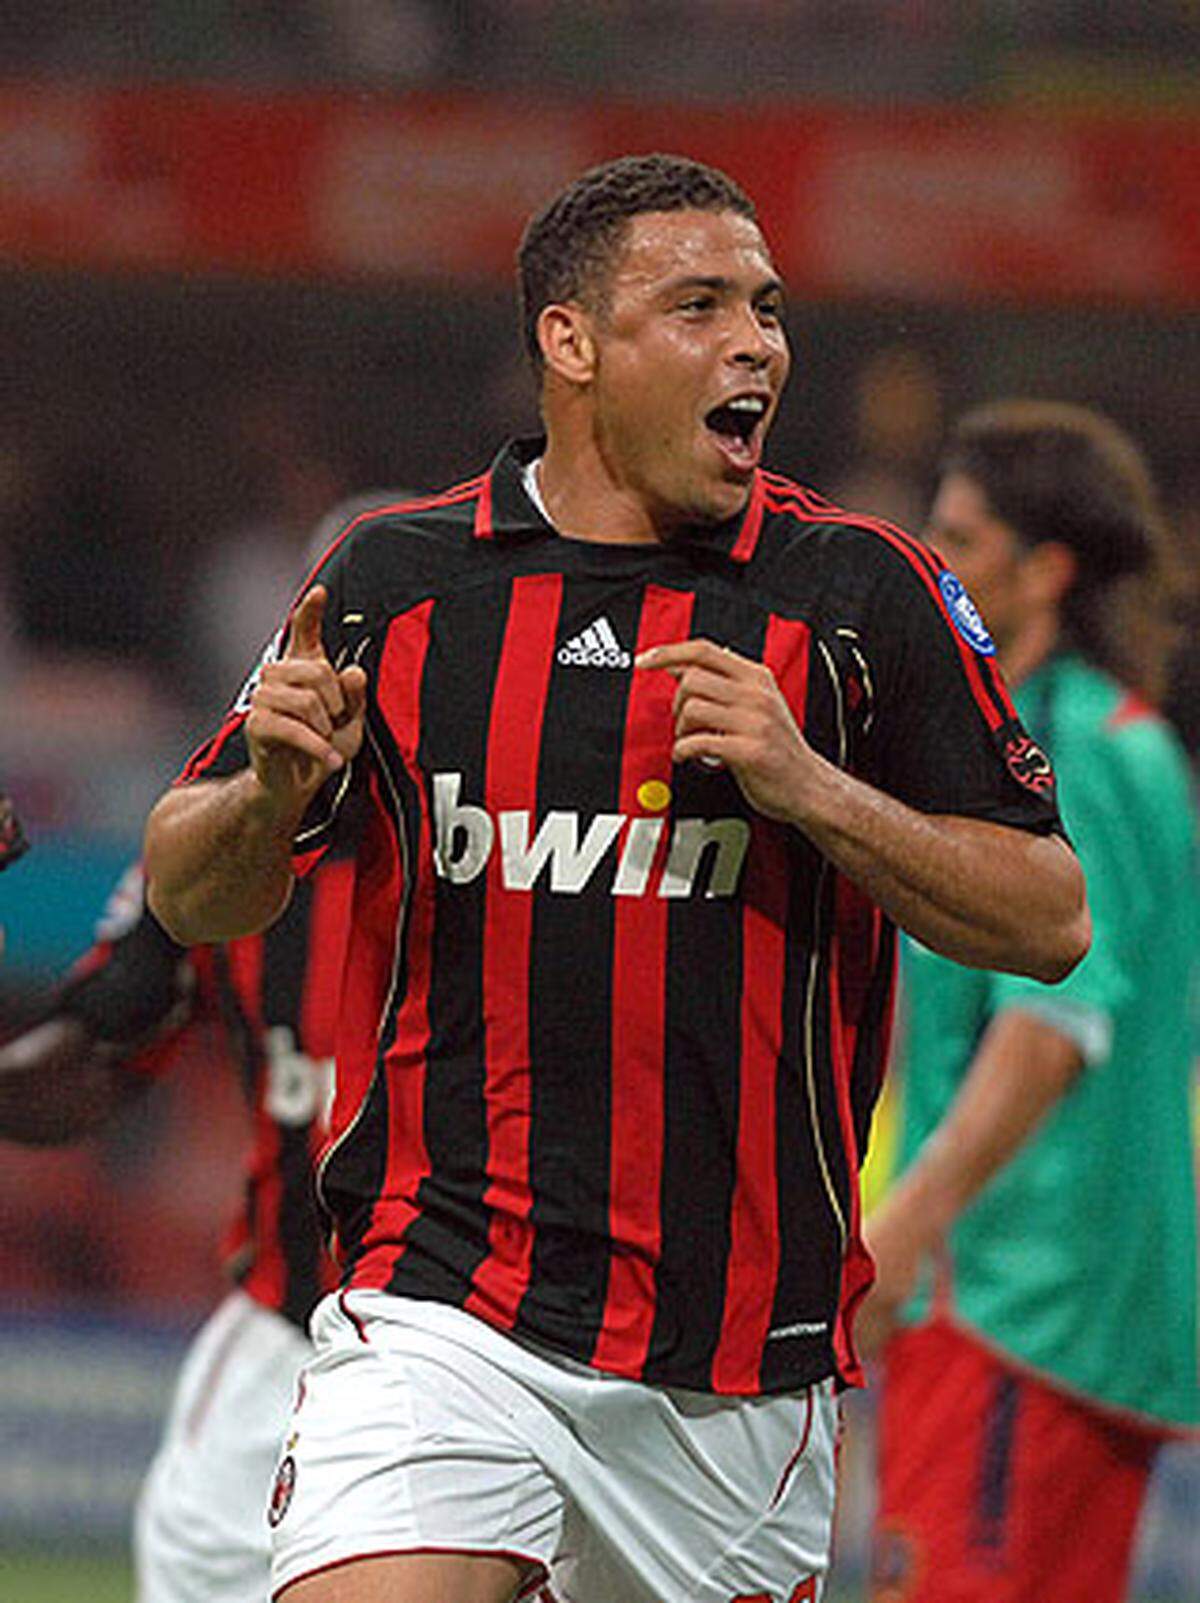 2007 wechselt Ronaldo zum AC Mailand. In der Champions League ist er nicht spielberechtigt und hat daher wenig Anteil am großen Triumph der "Rossoneri".